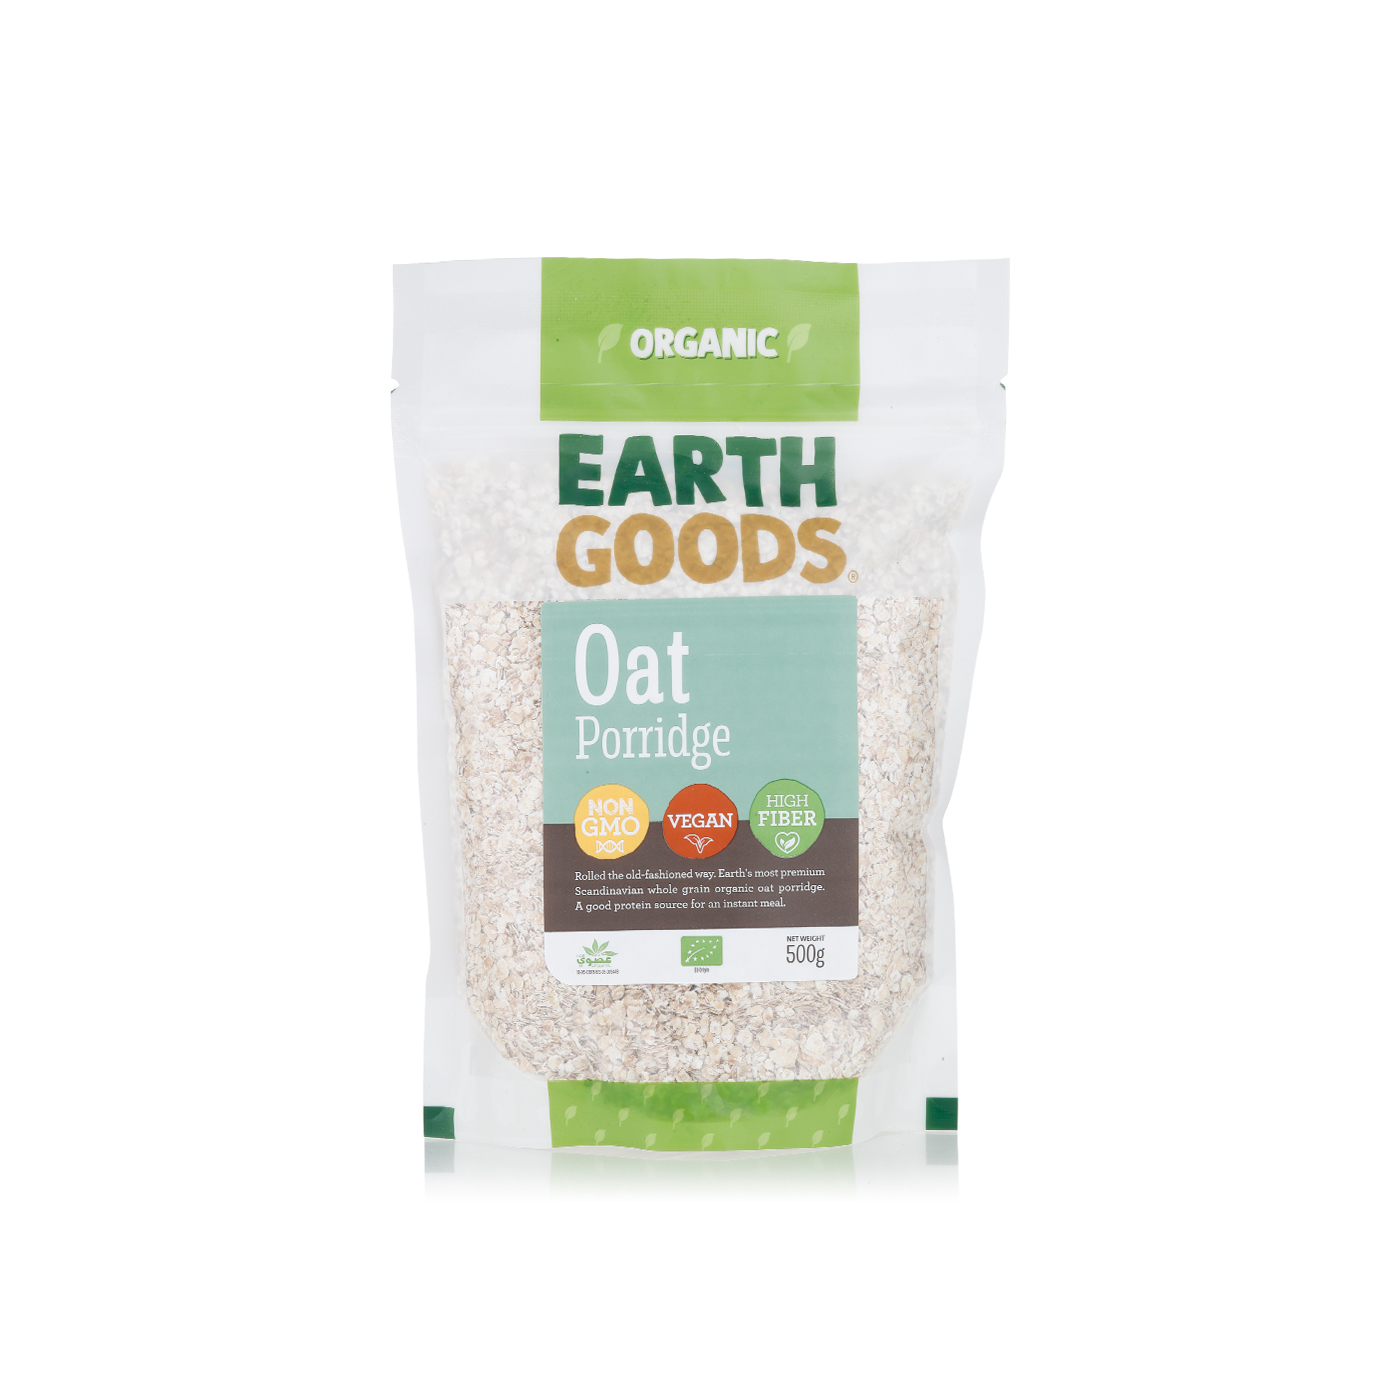 Earth Goods organic oat porridge 500g - Spinneys UAE